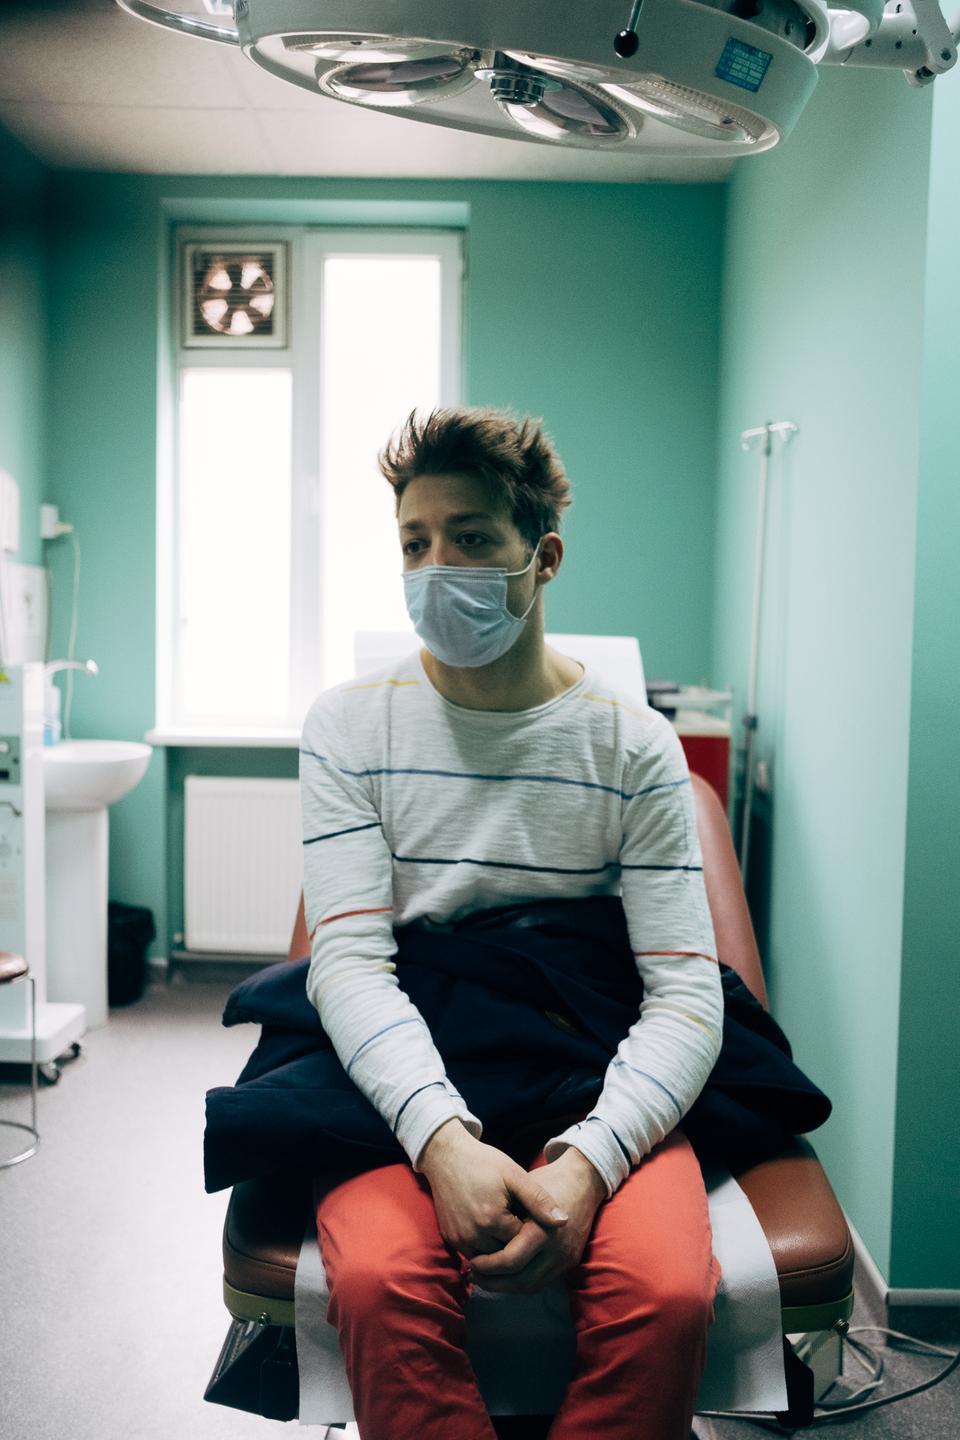 Ein junger Mann sitzt mit Maske auf einem Behandlungsstuhl.